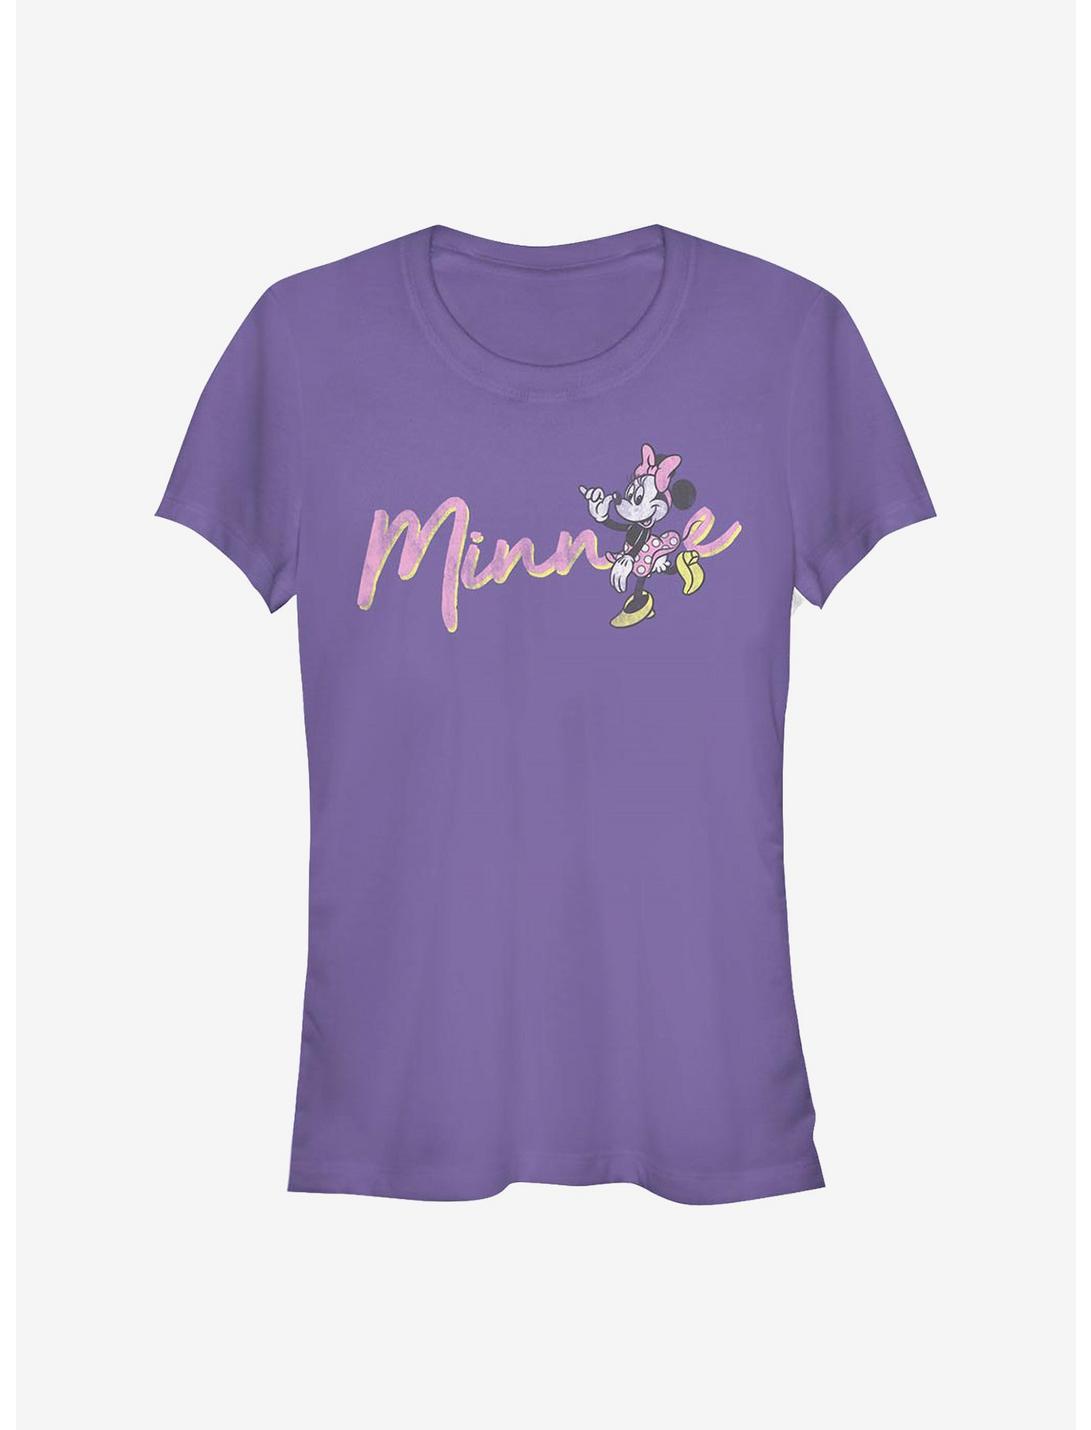 Disney Minnie Mouse Minnie Girls T-Shirt, PURPLE, hi-res